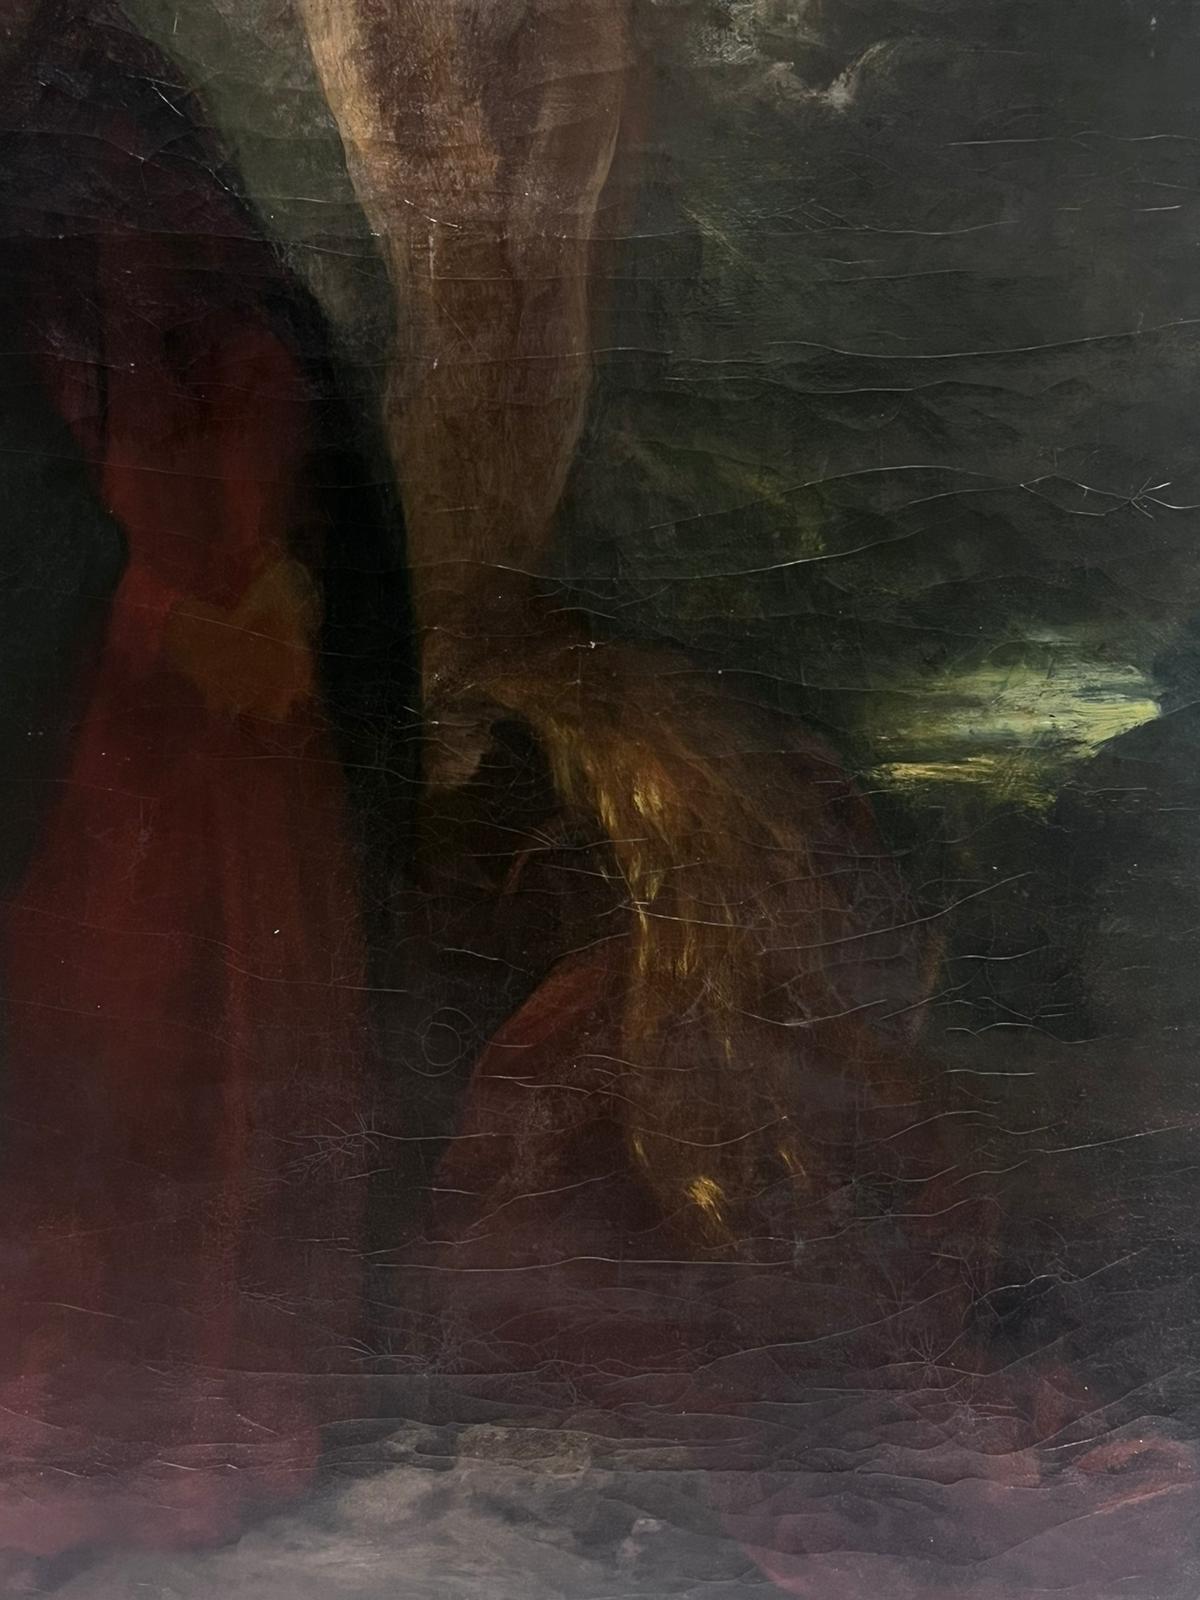 Grande peinture à l'huile de la période romantique française des années 1830 Christ en croix - Painting de Eugene Delacroix